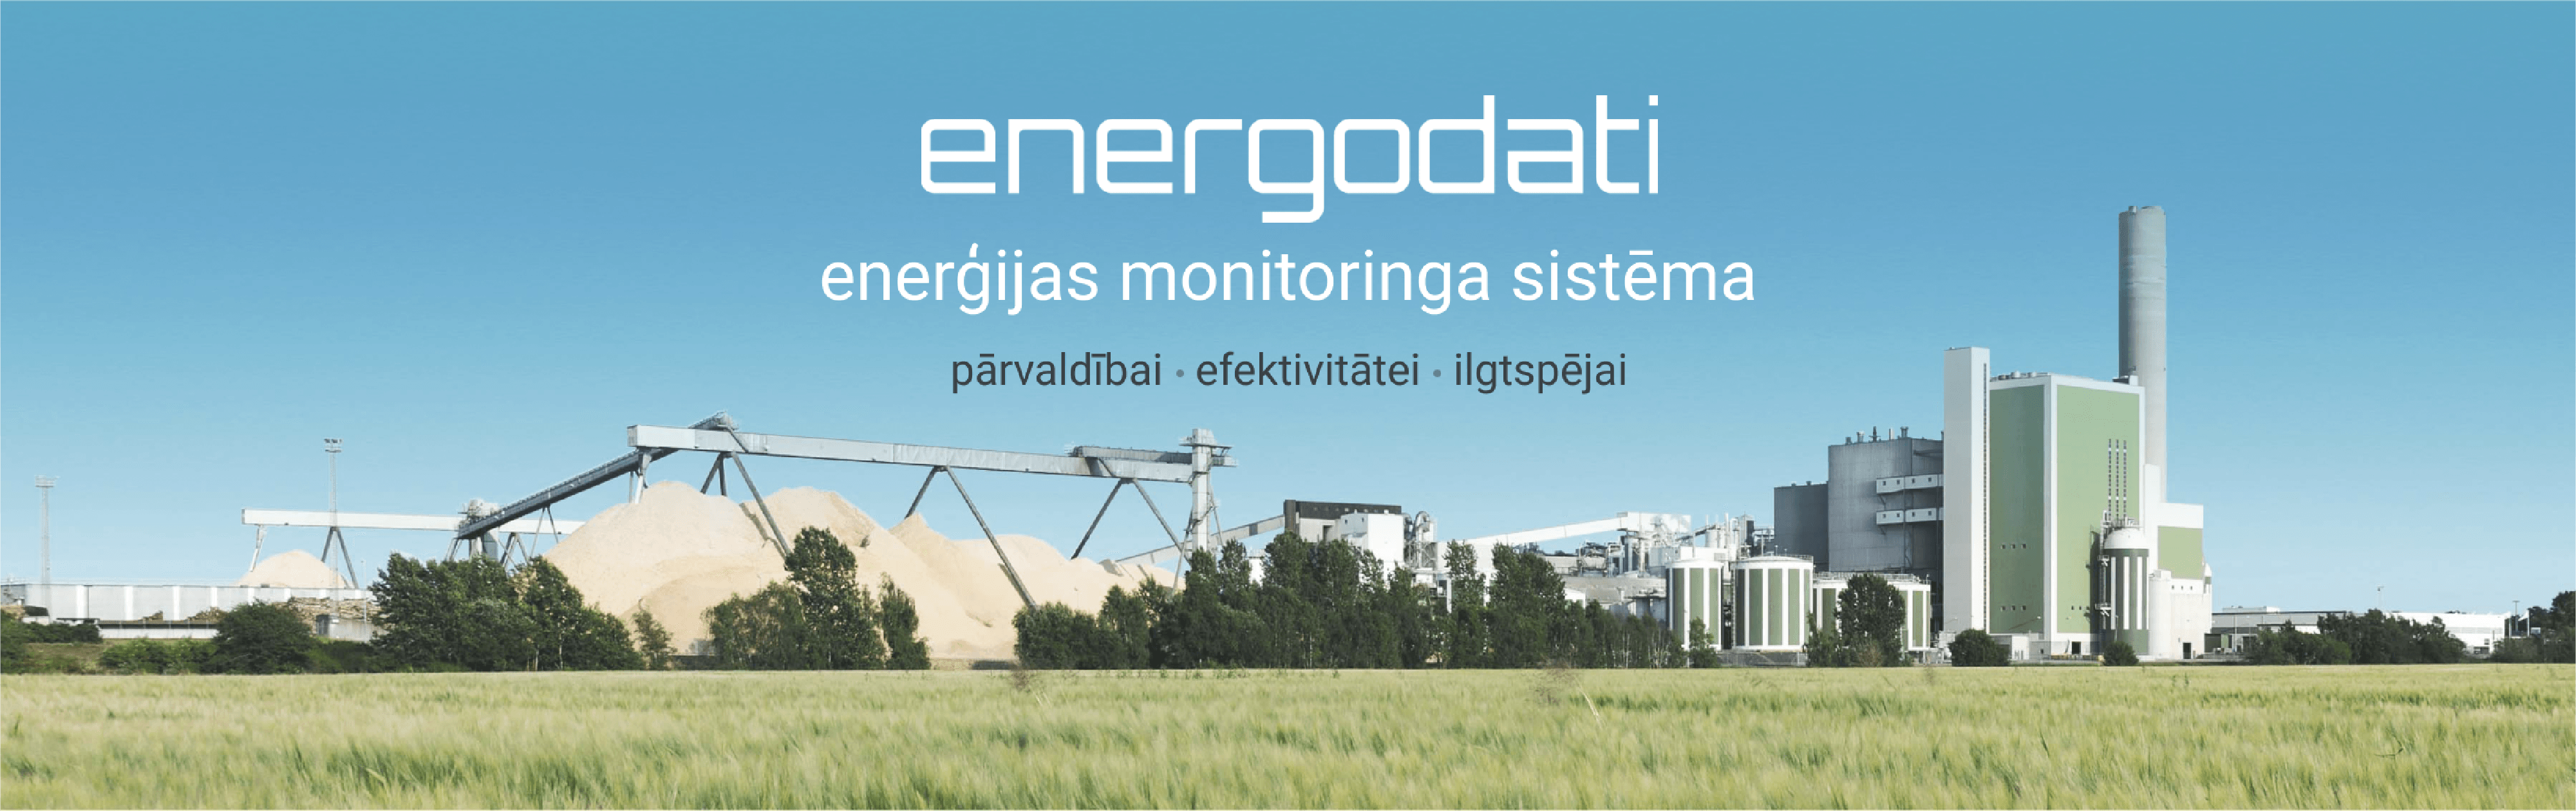 Energodati monitoringa sistēma pārvaldībai, efektivitātei, ilgtspējai